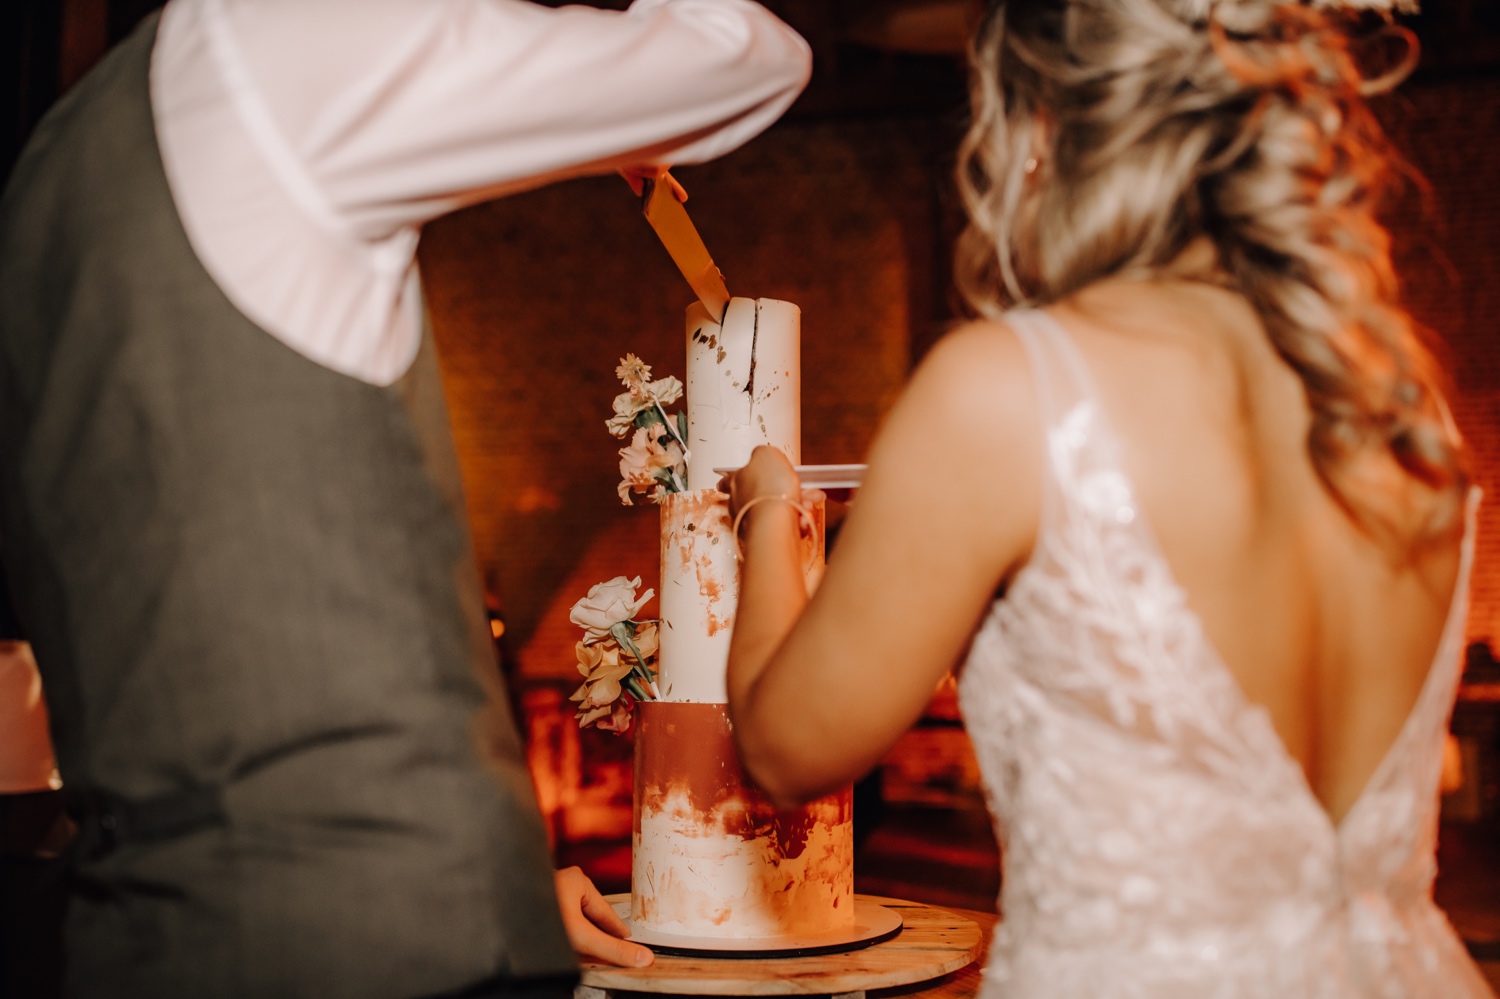 Huwelijksfotograaf Limburg - bruidspaar snijdt bruidstaart